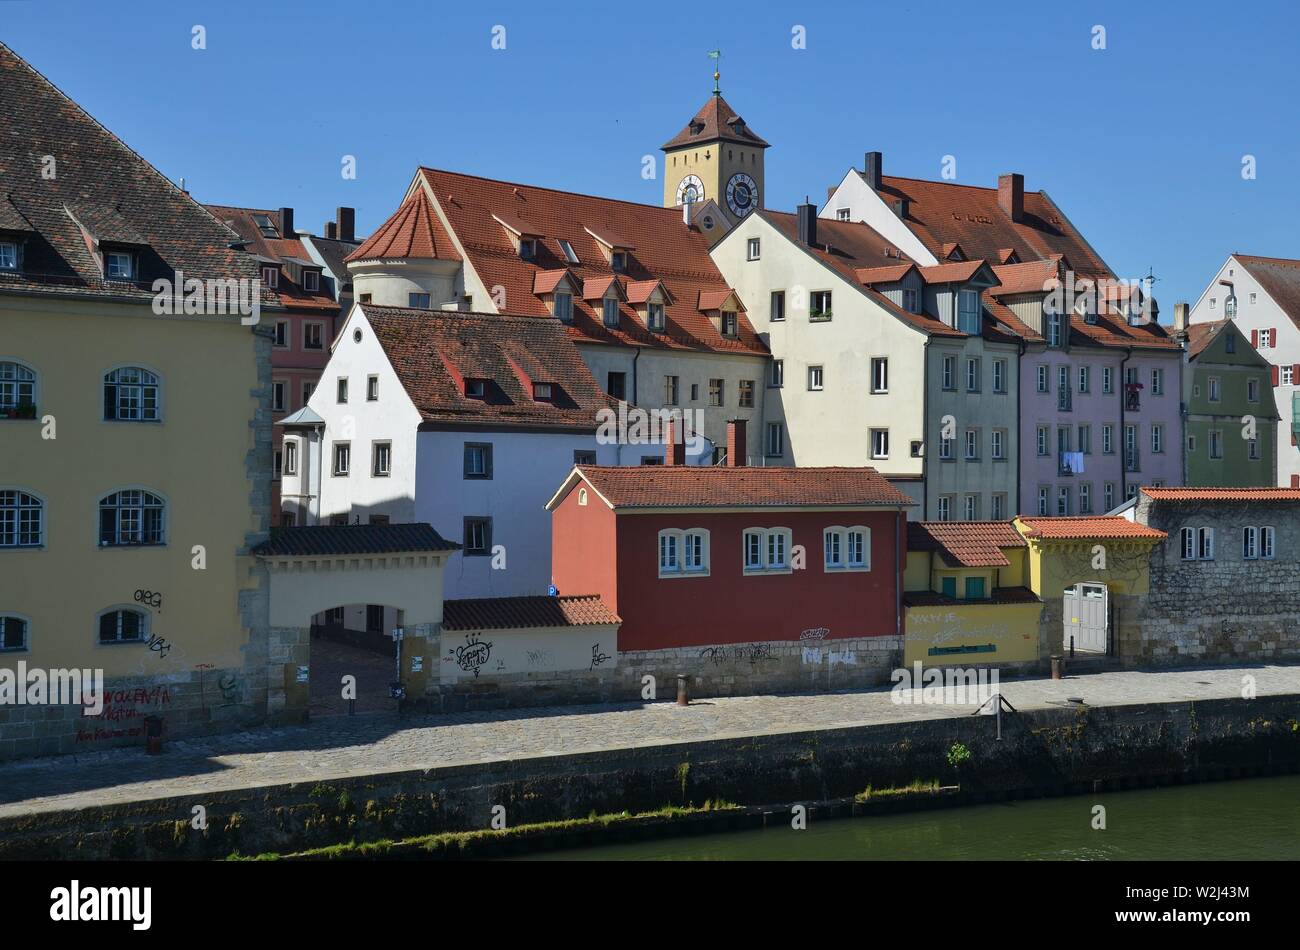 Regensburg, Oberpfalz, Bayern : historische Stadt an der Donau : Blick von der steinernen Brücke auf die Altstadt Banque D'Images